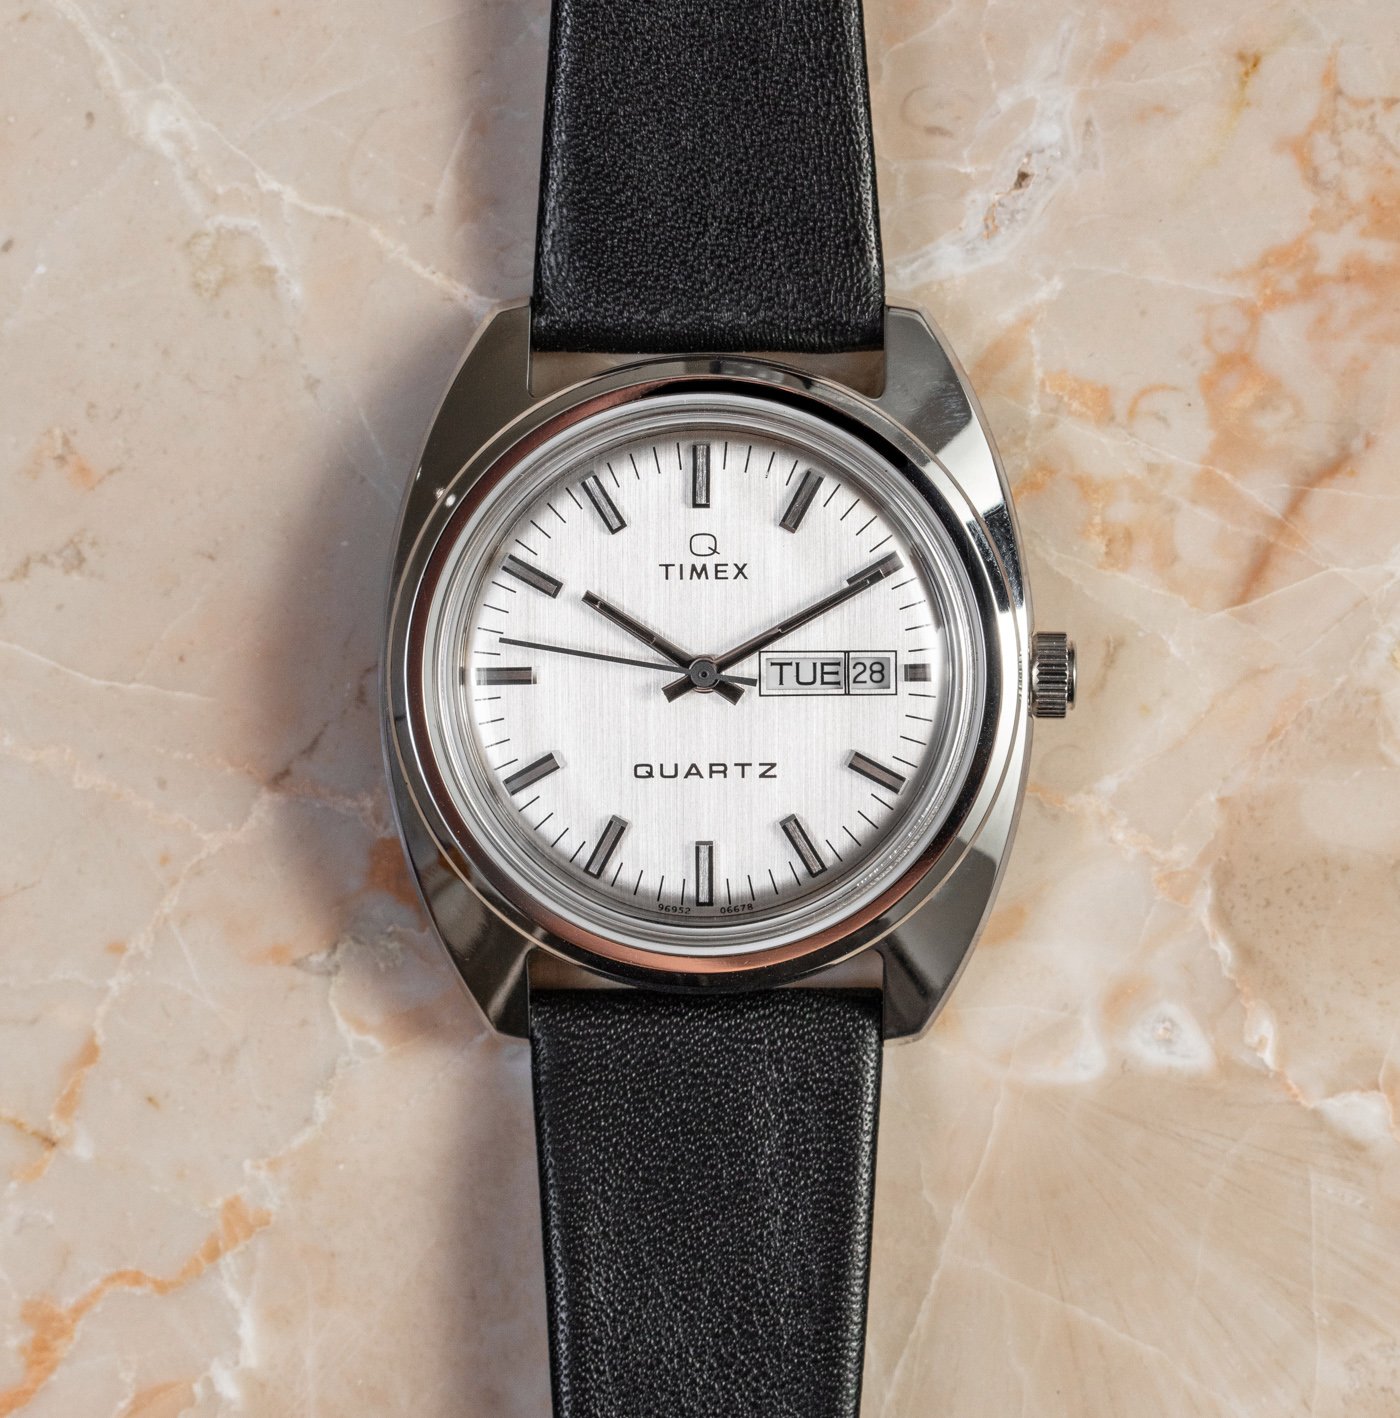 Винтажные часы за приятную стоимость: Q Timex 1978 Reissue Day-Date